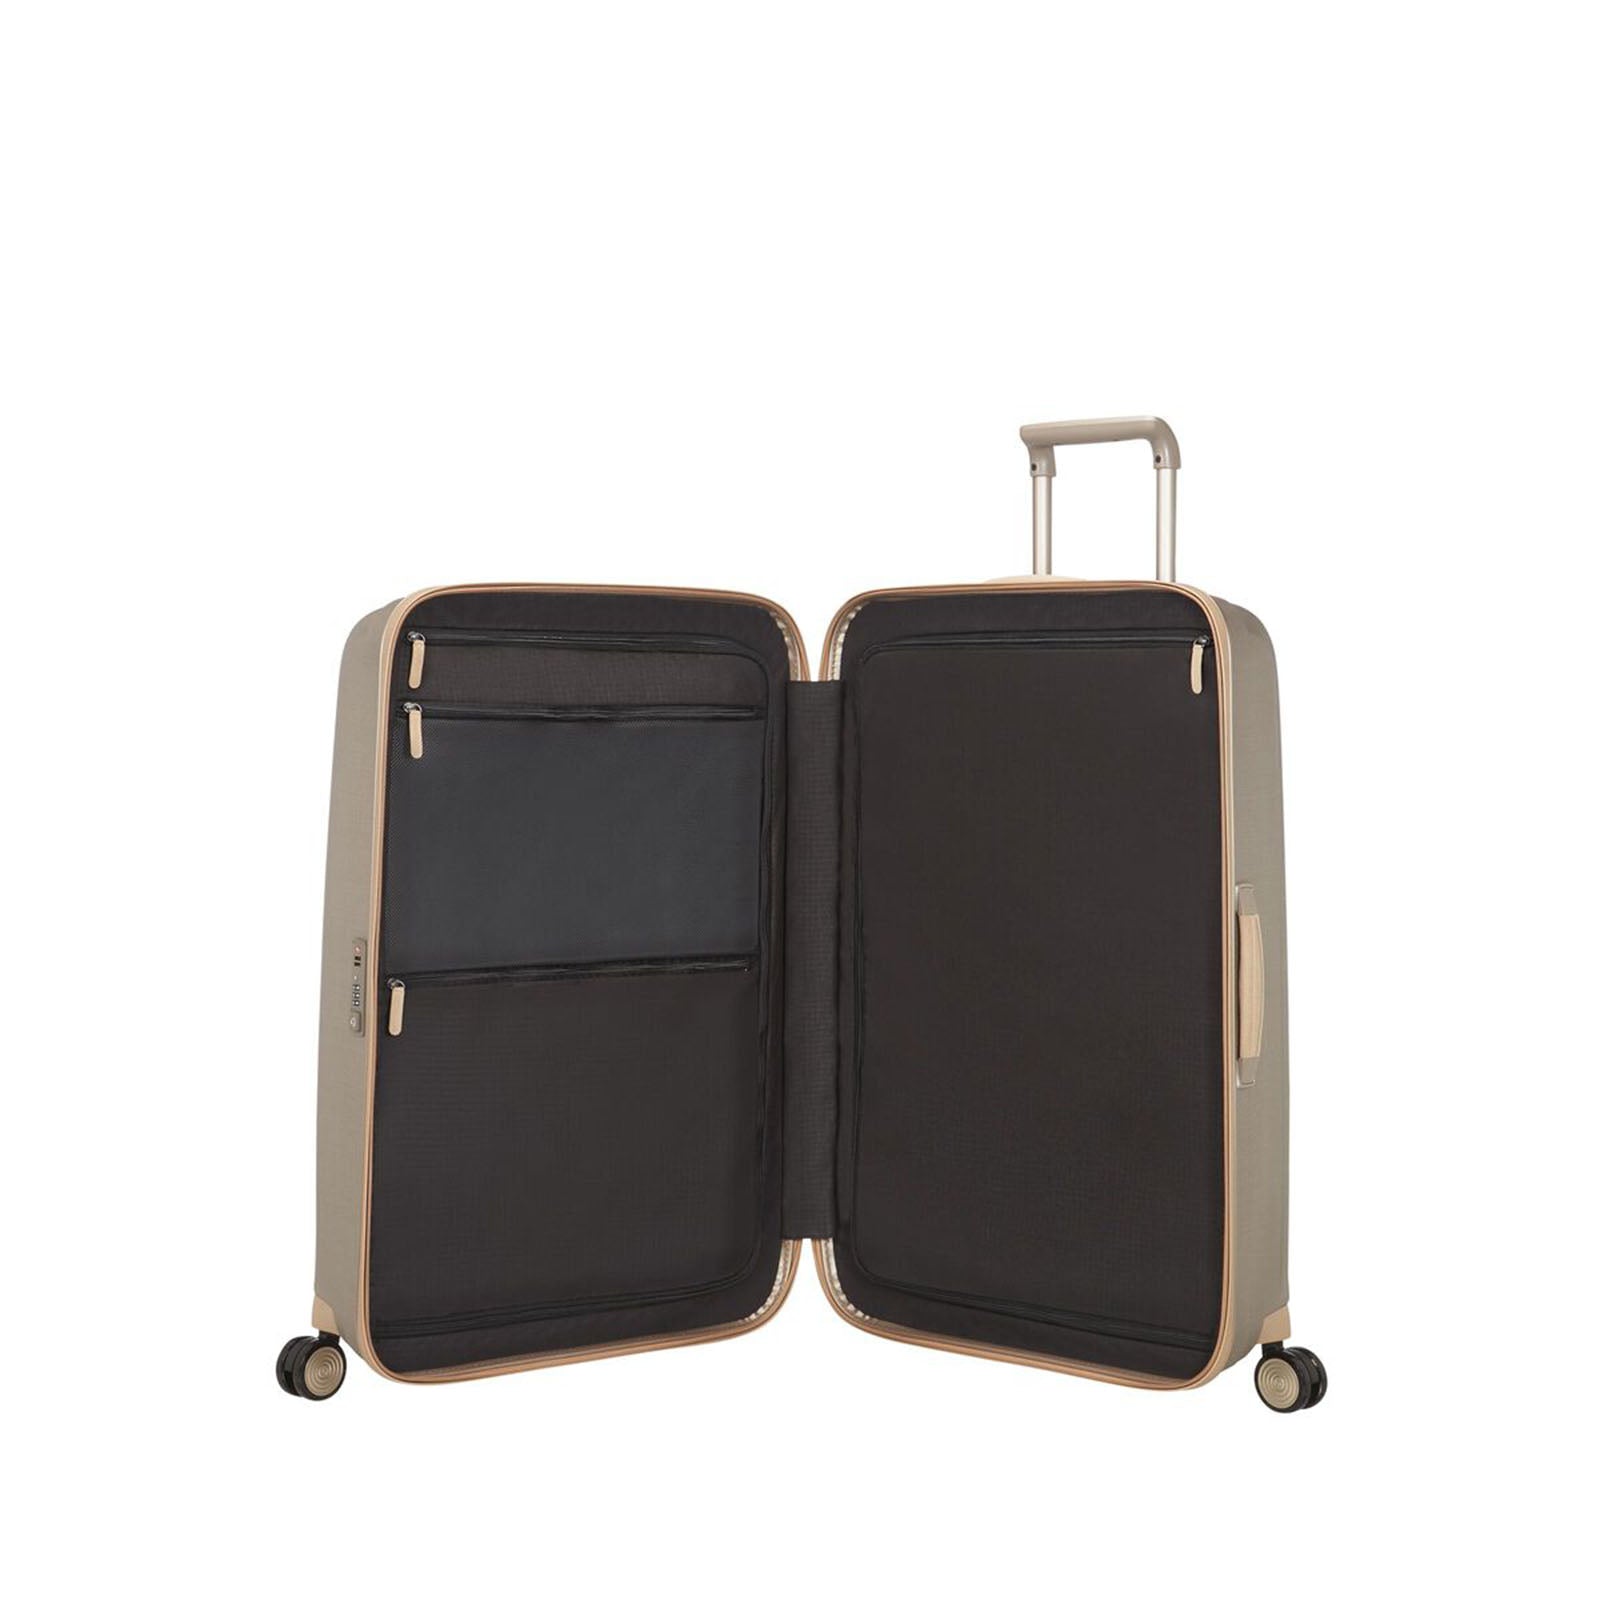 Samsonite-Lite-Cube-Prime-82cm-Suitcase-Ivory-Gold-Open